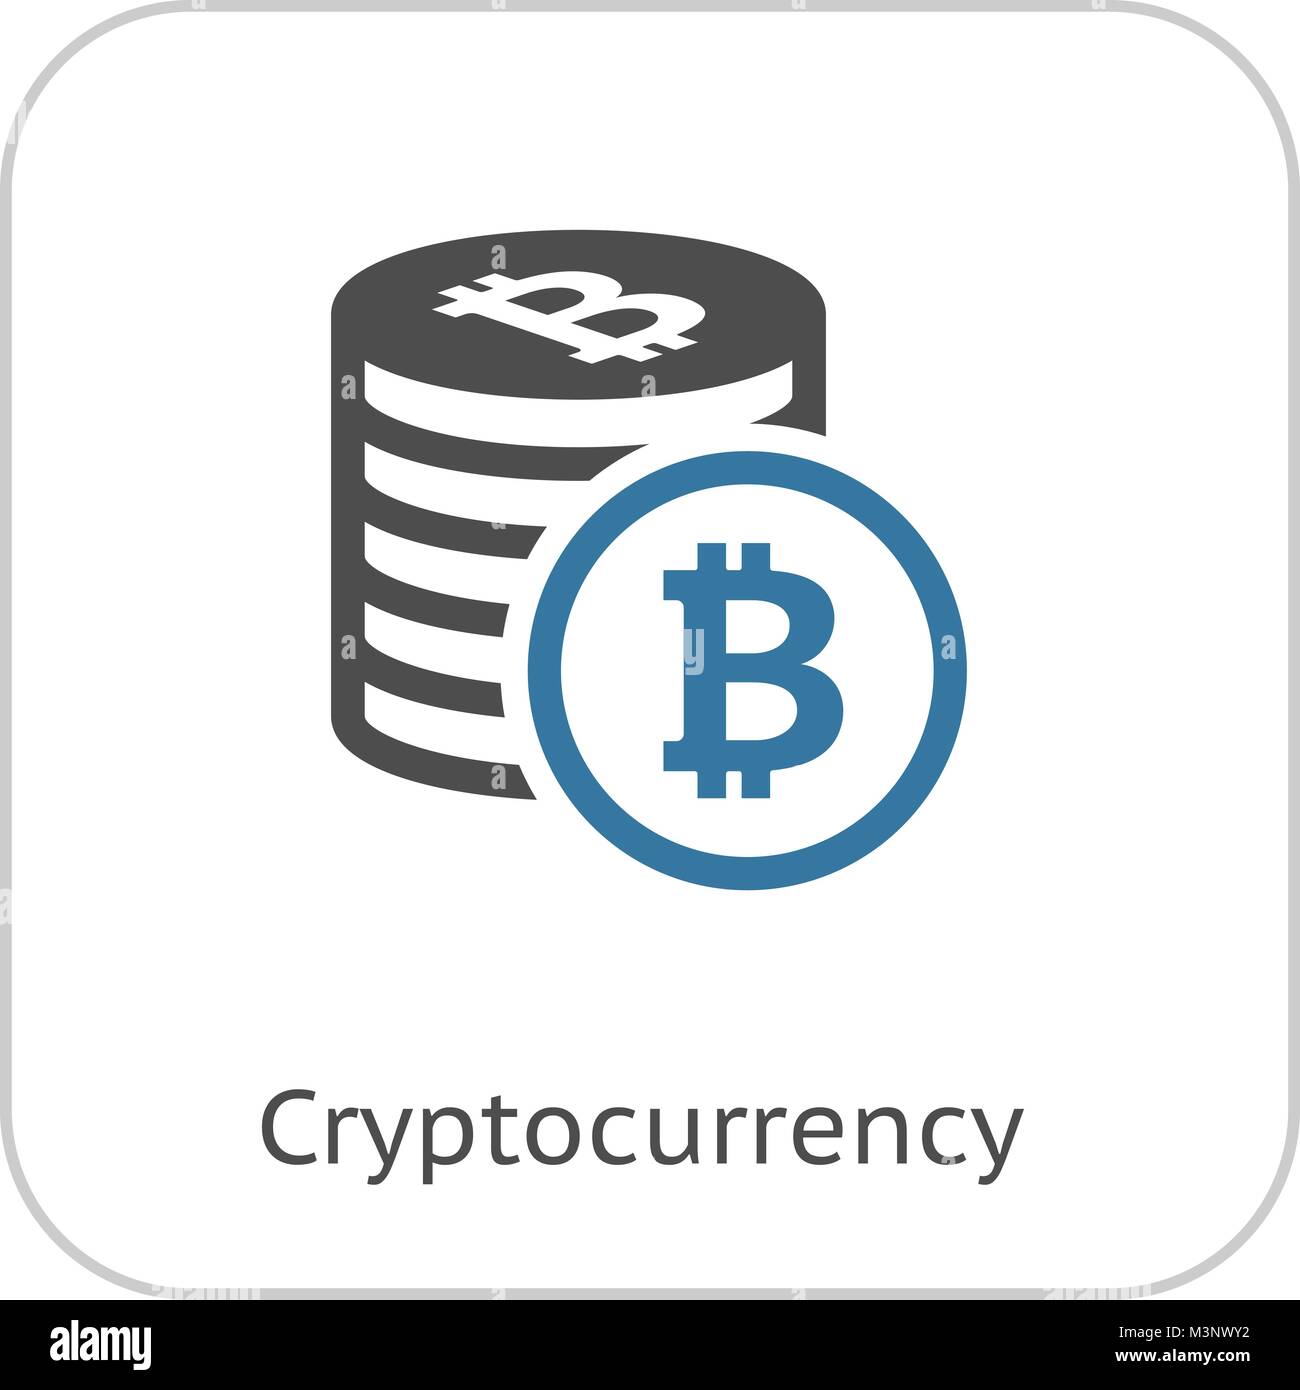 Cryptocurrency Icona piatta. Illustrazione Vettoriale